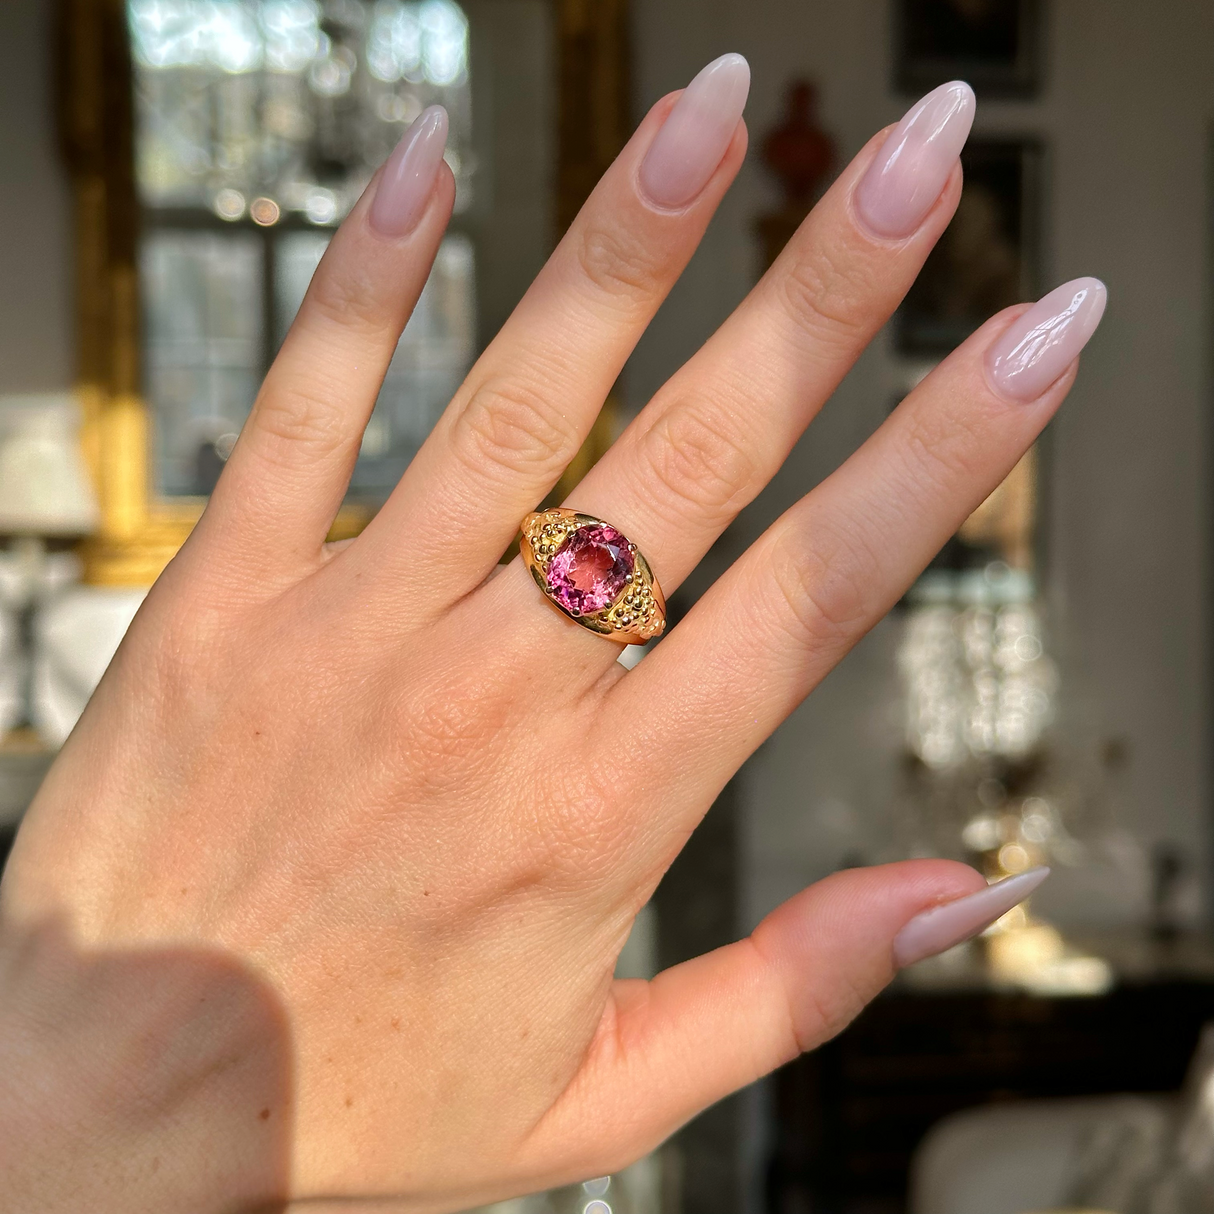 Victorian antique pink tourmaline ring worn on hand. 